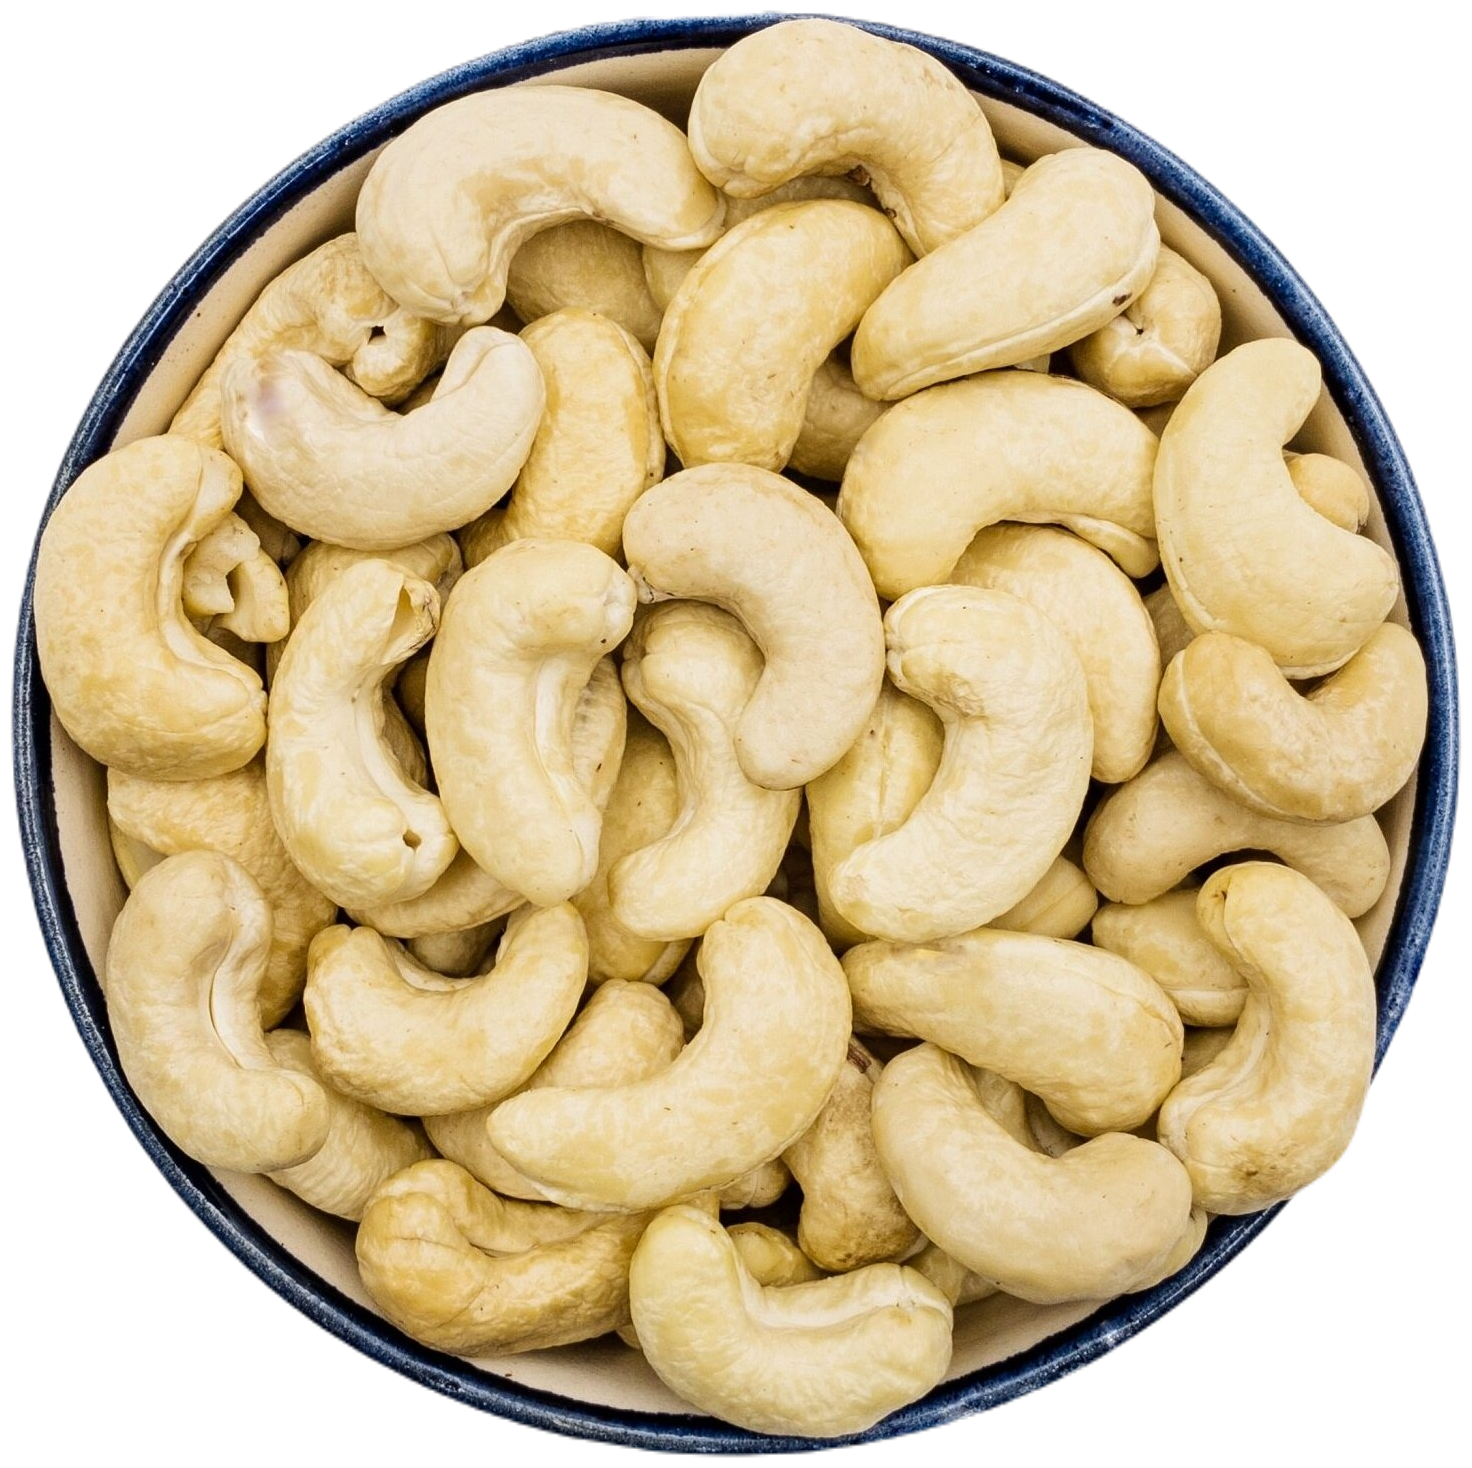 Кешью сушеный крупный 1000 грамм, свежий урожай, без обжарки, молочный вкус WALNUTS отборные крупные орехи